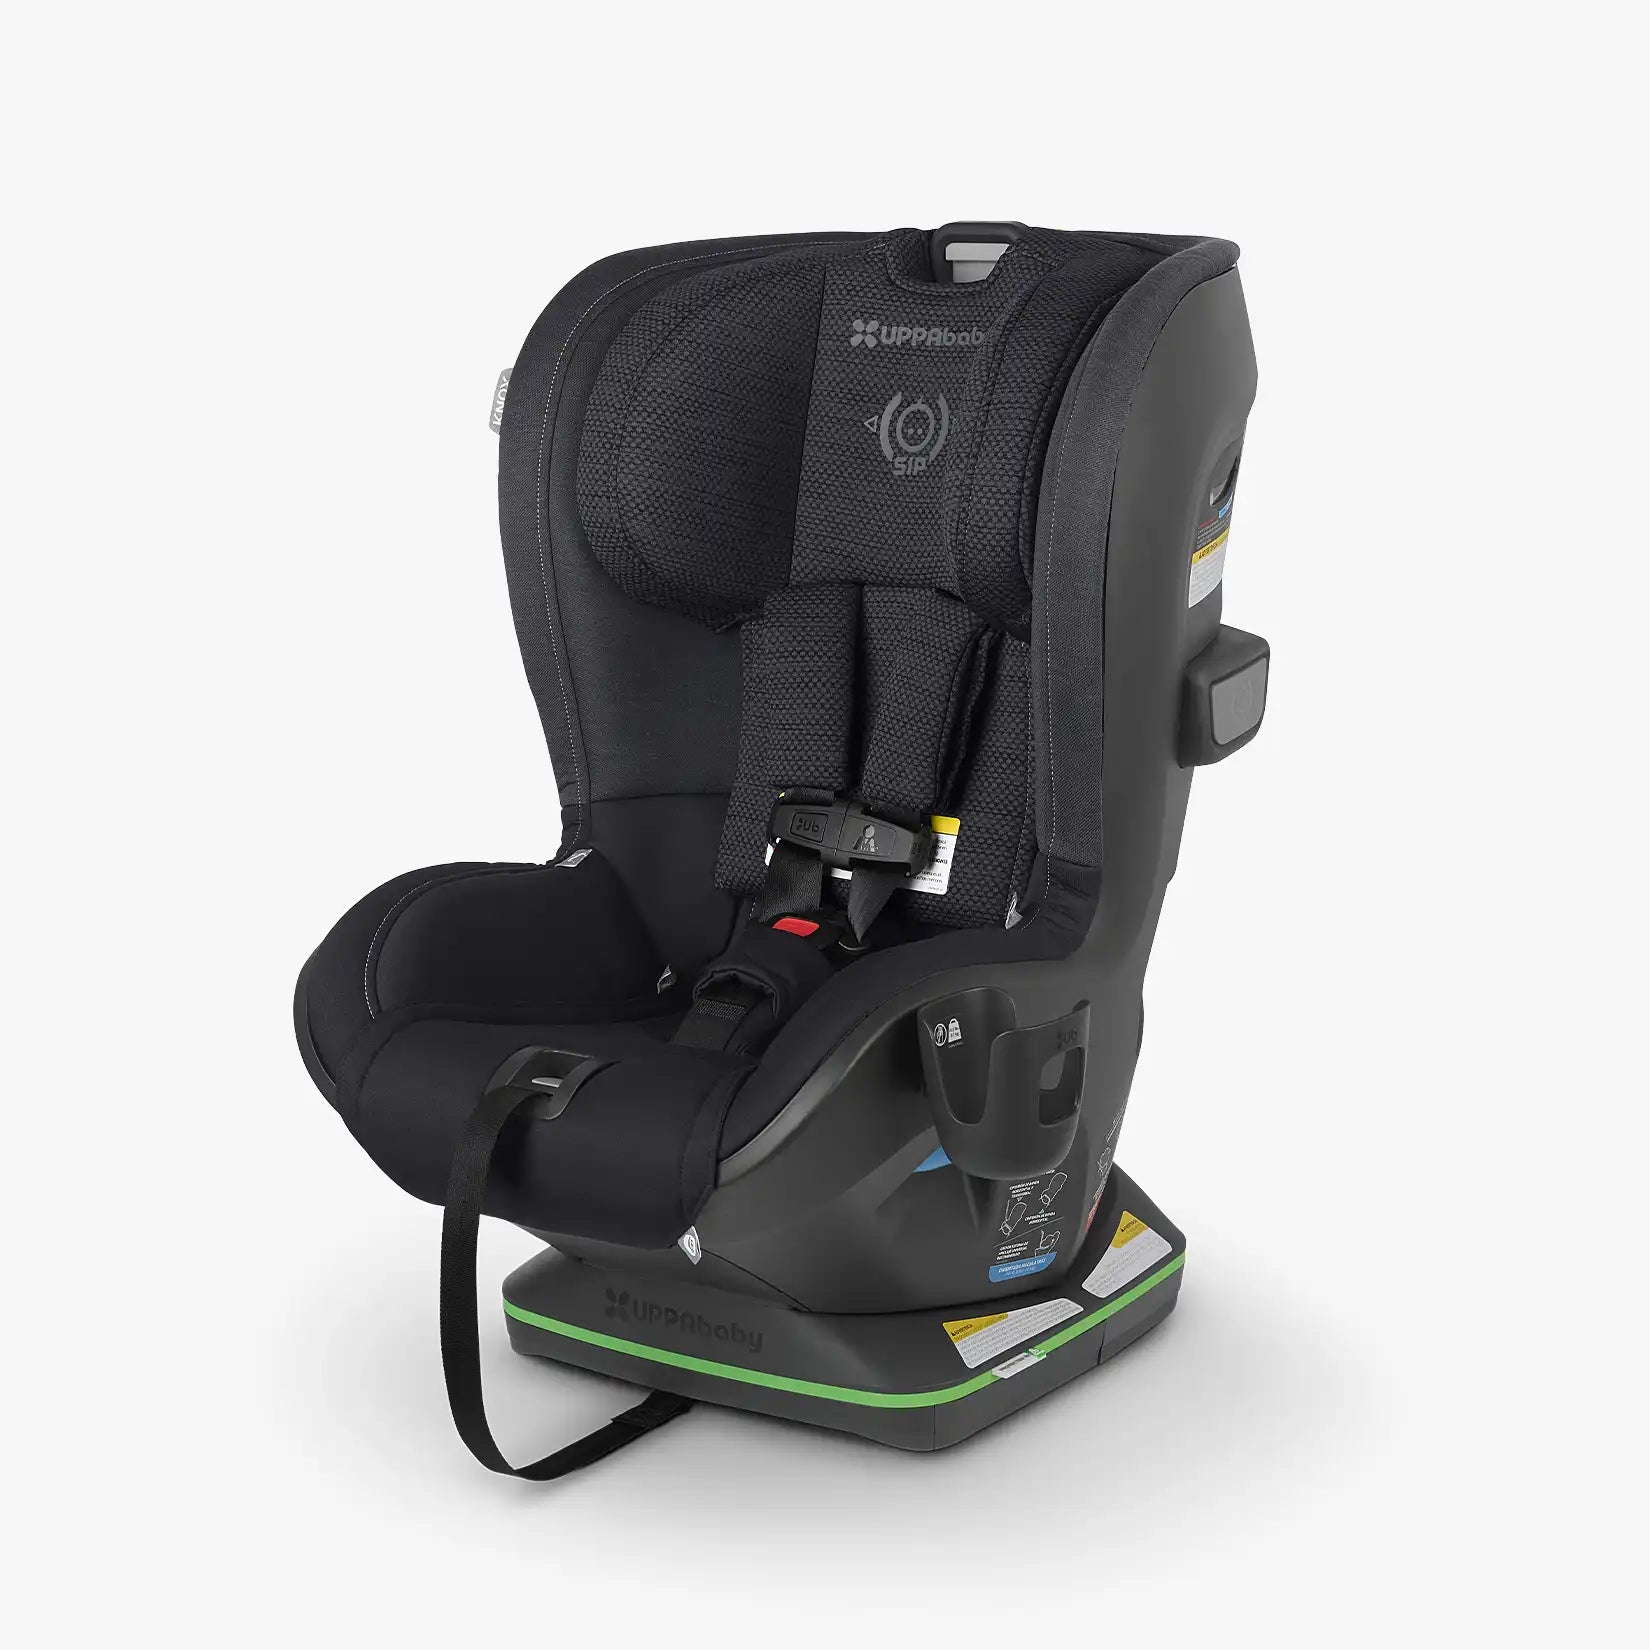 UPPAbaby KNOX Convertible Car Seat - ANB Baby -810030093800$300 - $500